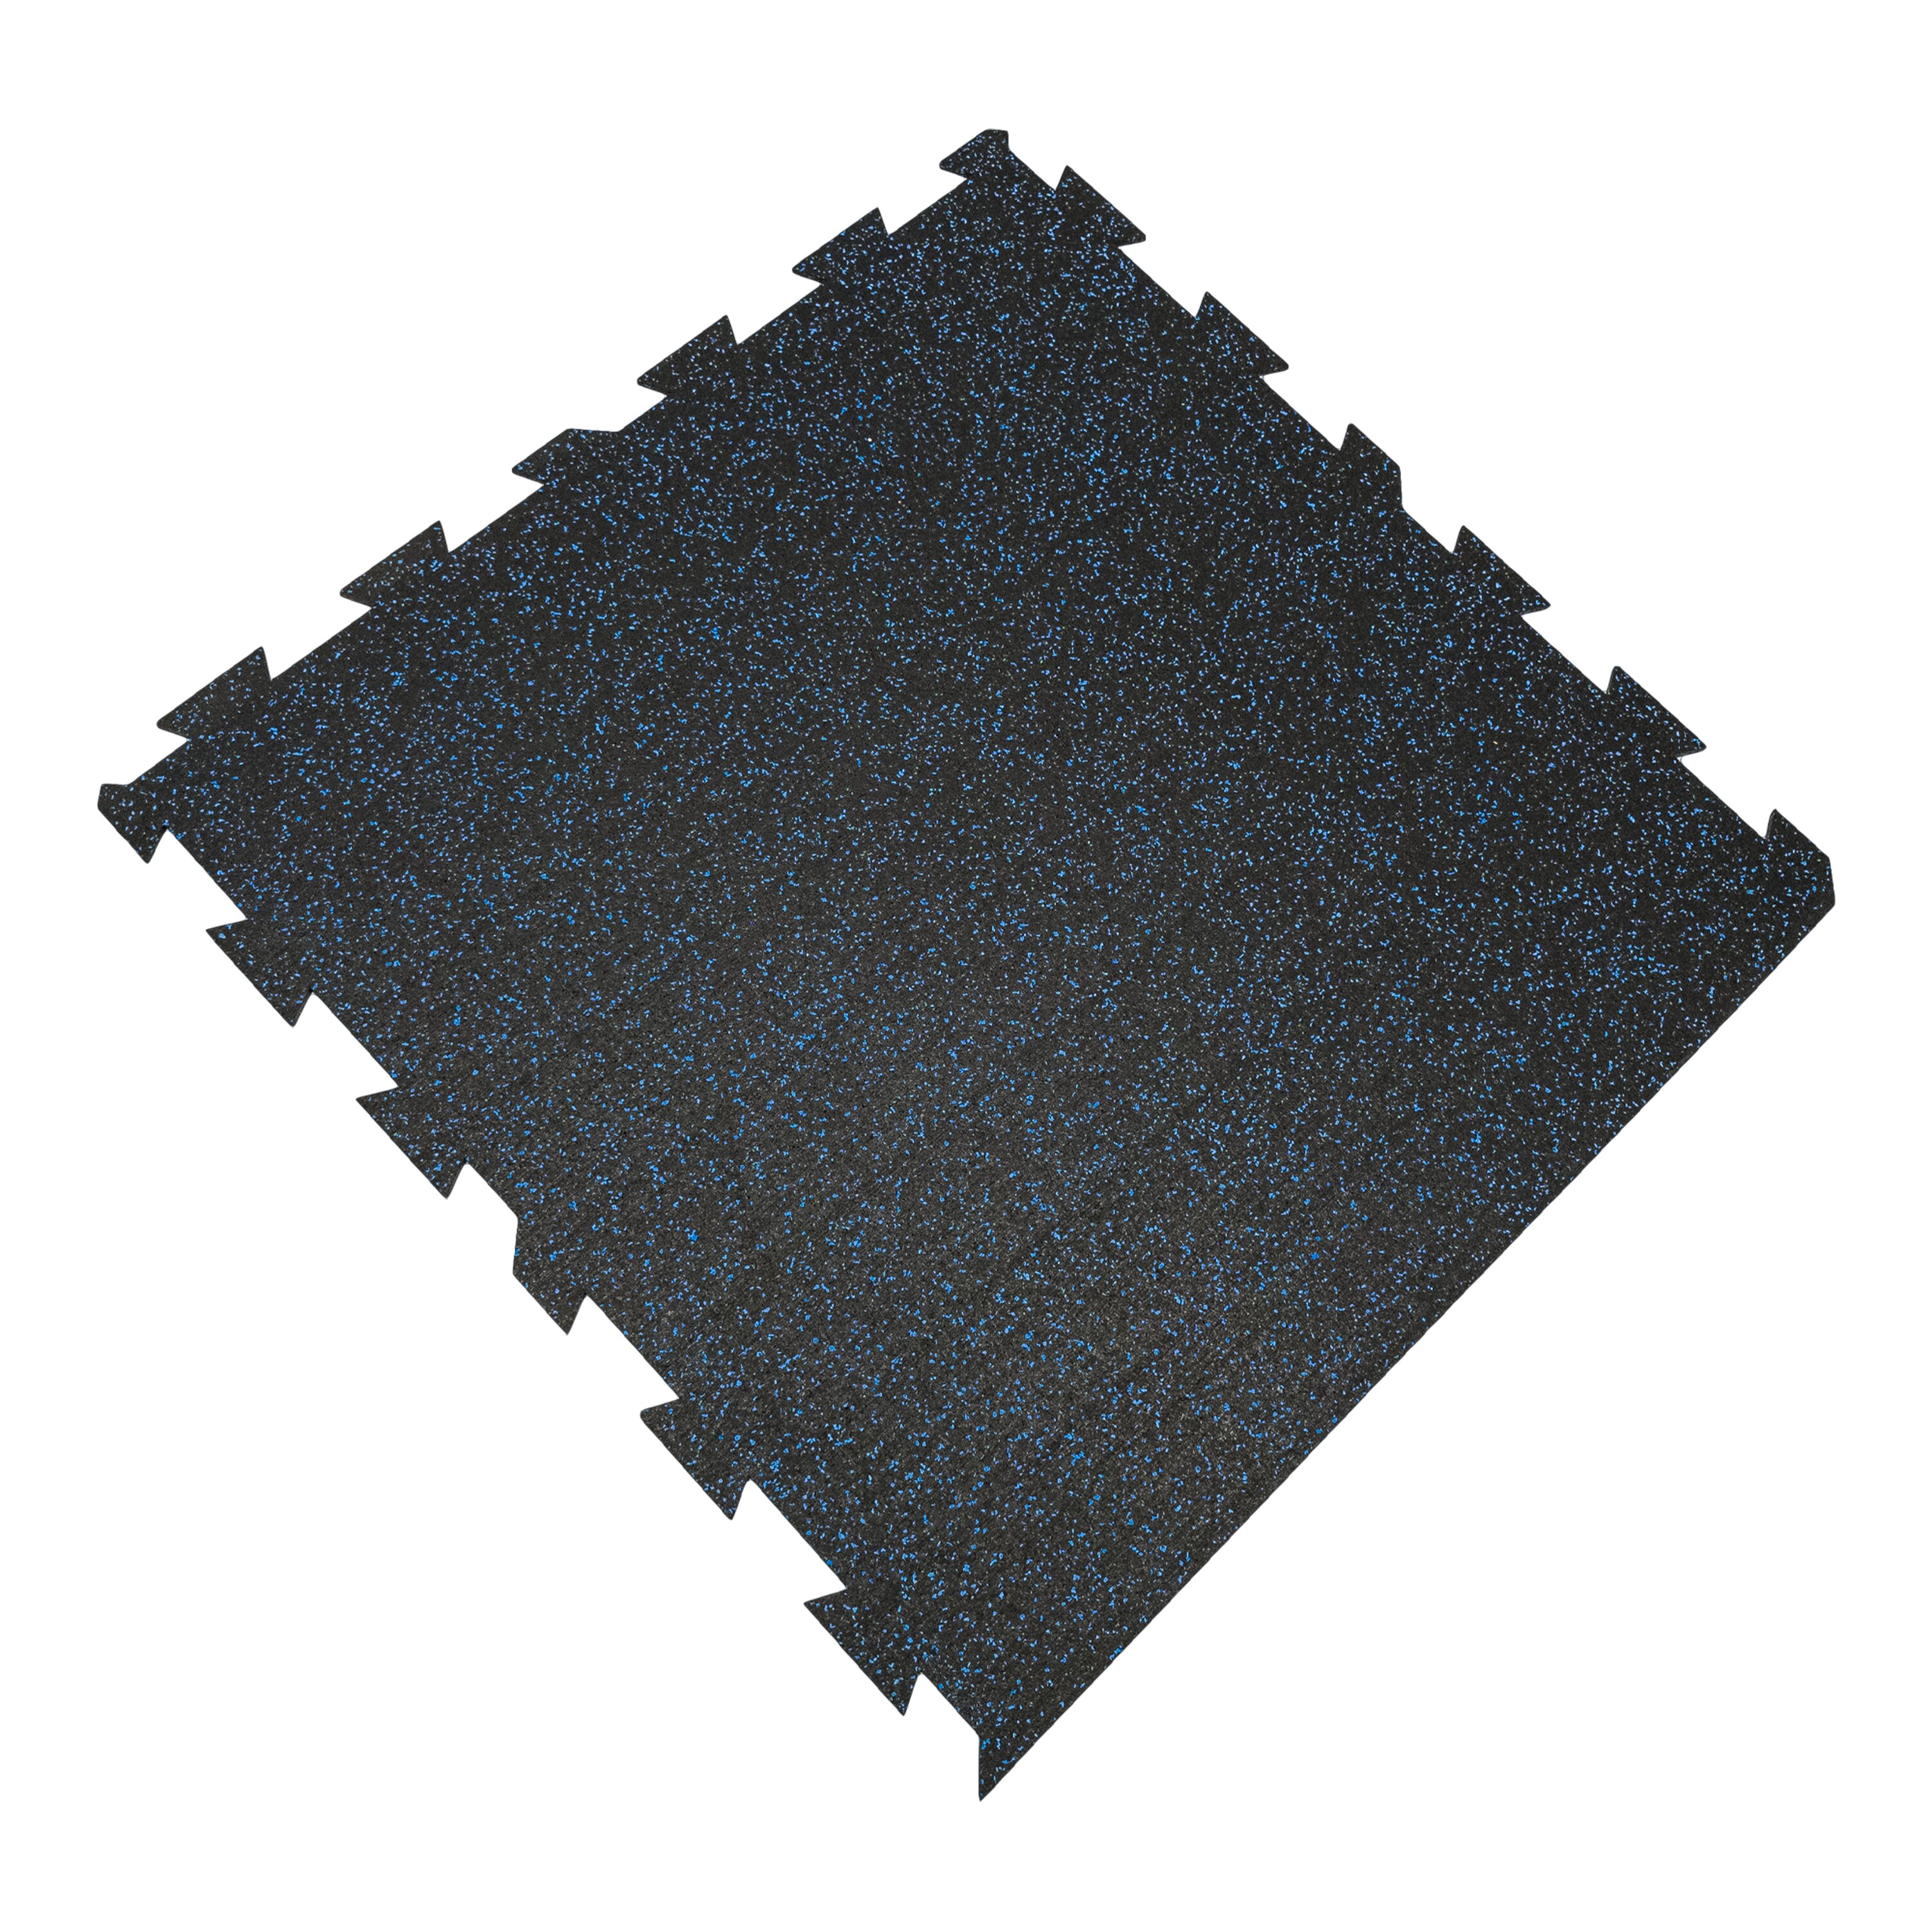 Čierno-modrá gumová modulová puzzle dlažba (okraj) FLOMA FitFlo SF1050 - dĺžka 100 cm, šírka 100 cm, výška 0,8 cm